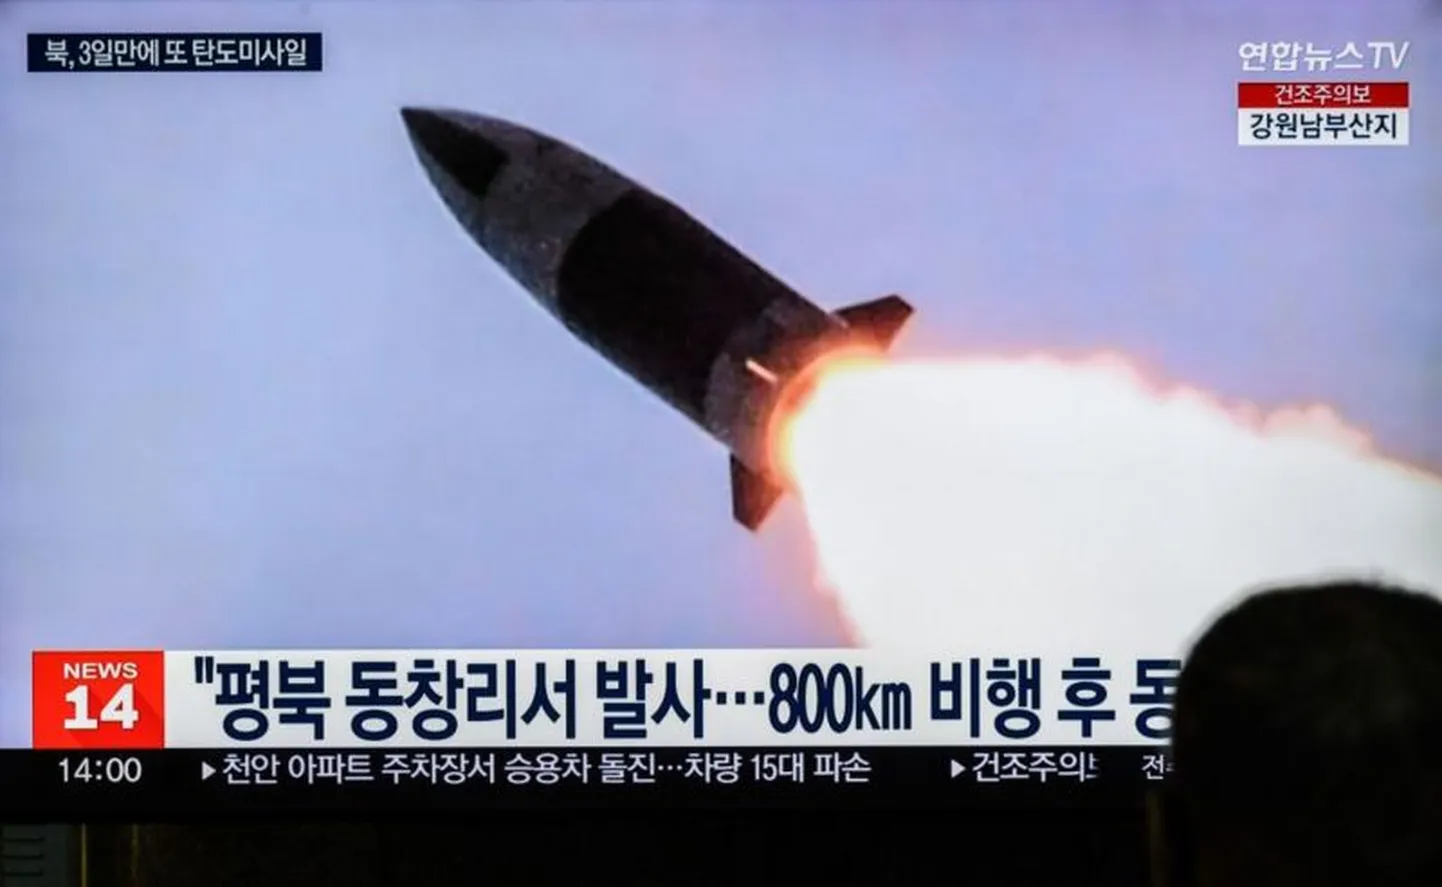 КНДР испытала ракету ближнего радиуса действия в 2023 году. На снимке - кадр из телерепортажа, показанного по южнокорейскому телевидению.